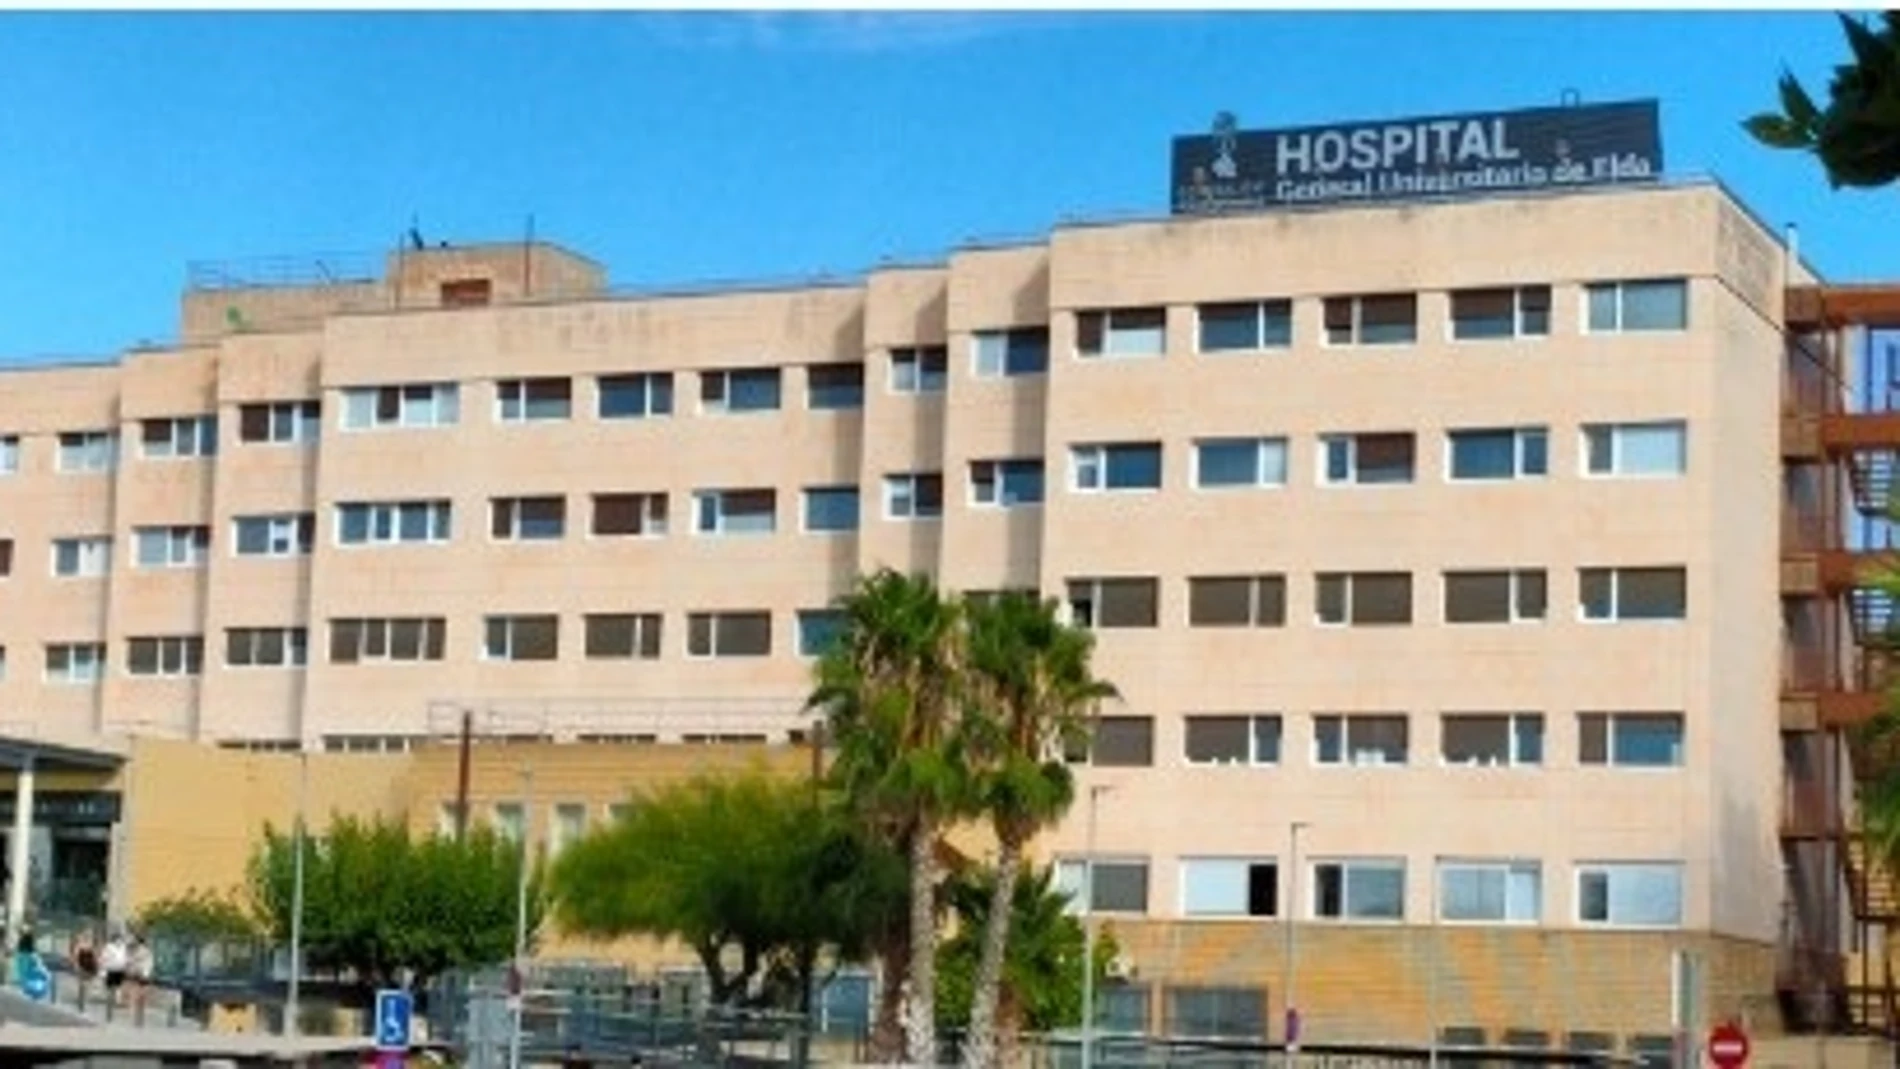 Imagen de la fachada del Hospital General Universitario de Elda